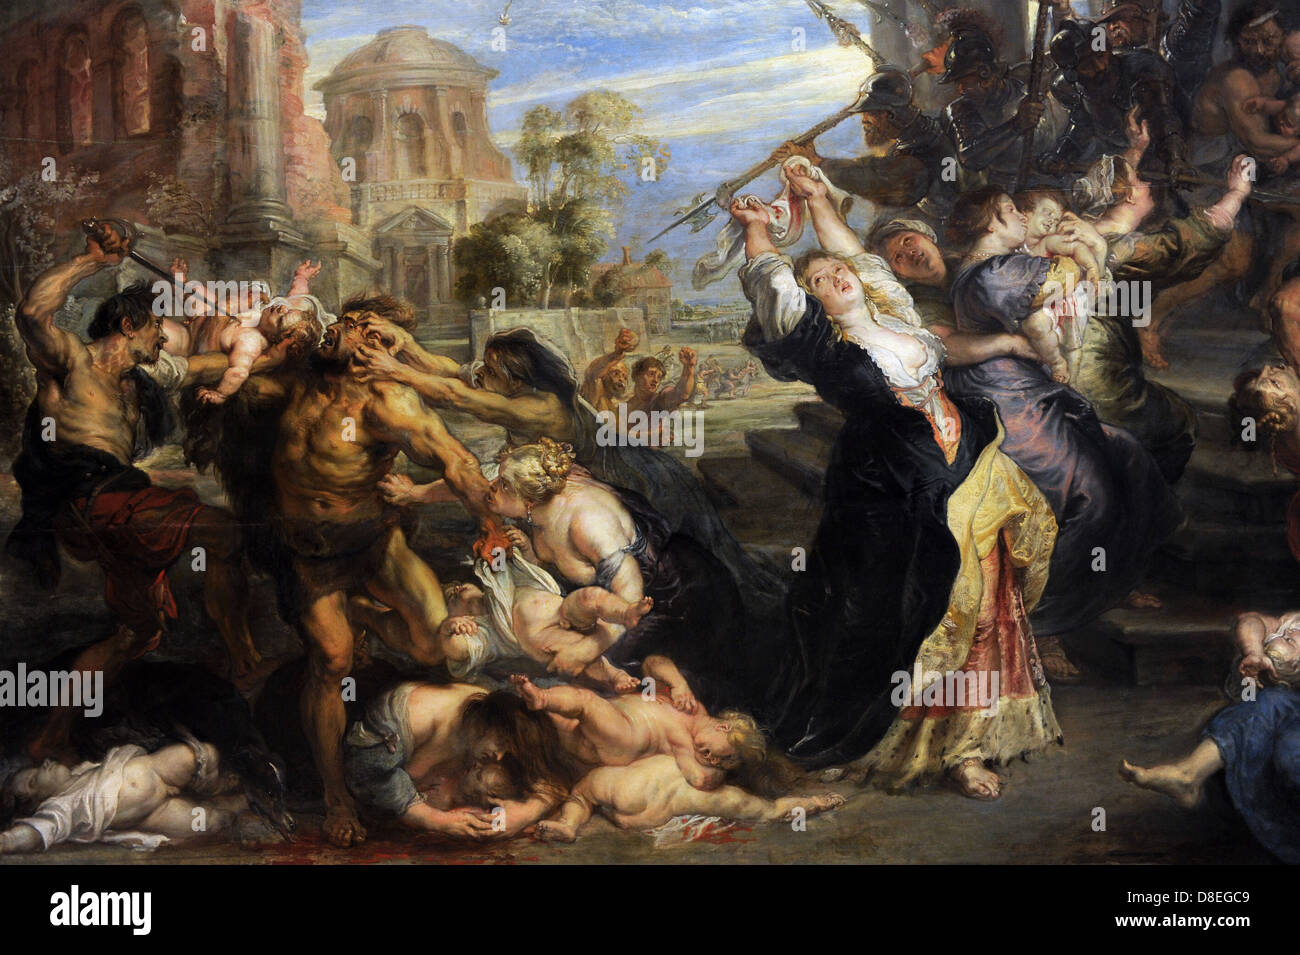 Peter Paul Rubens (1577-1640). Nacida en Alemania, pintor barroco flamenco. La matanza de los inocentes, 1635-40. Detalle. Foto de stock